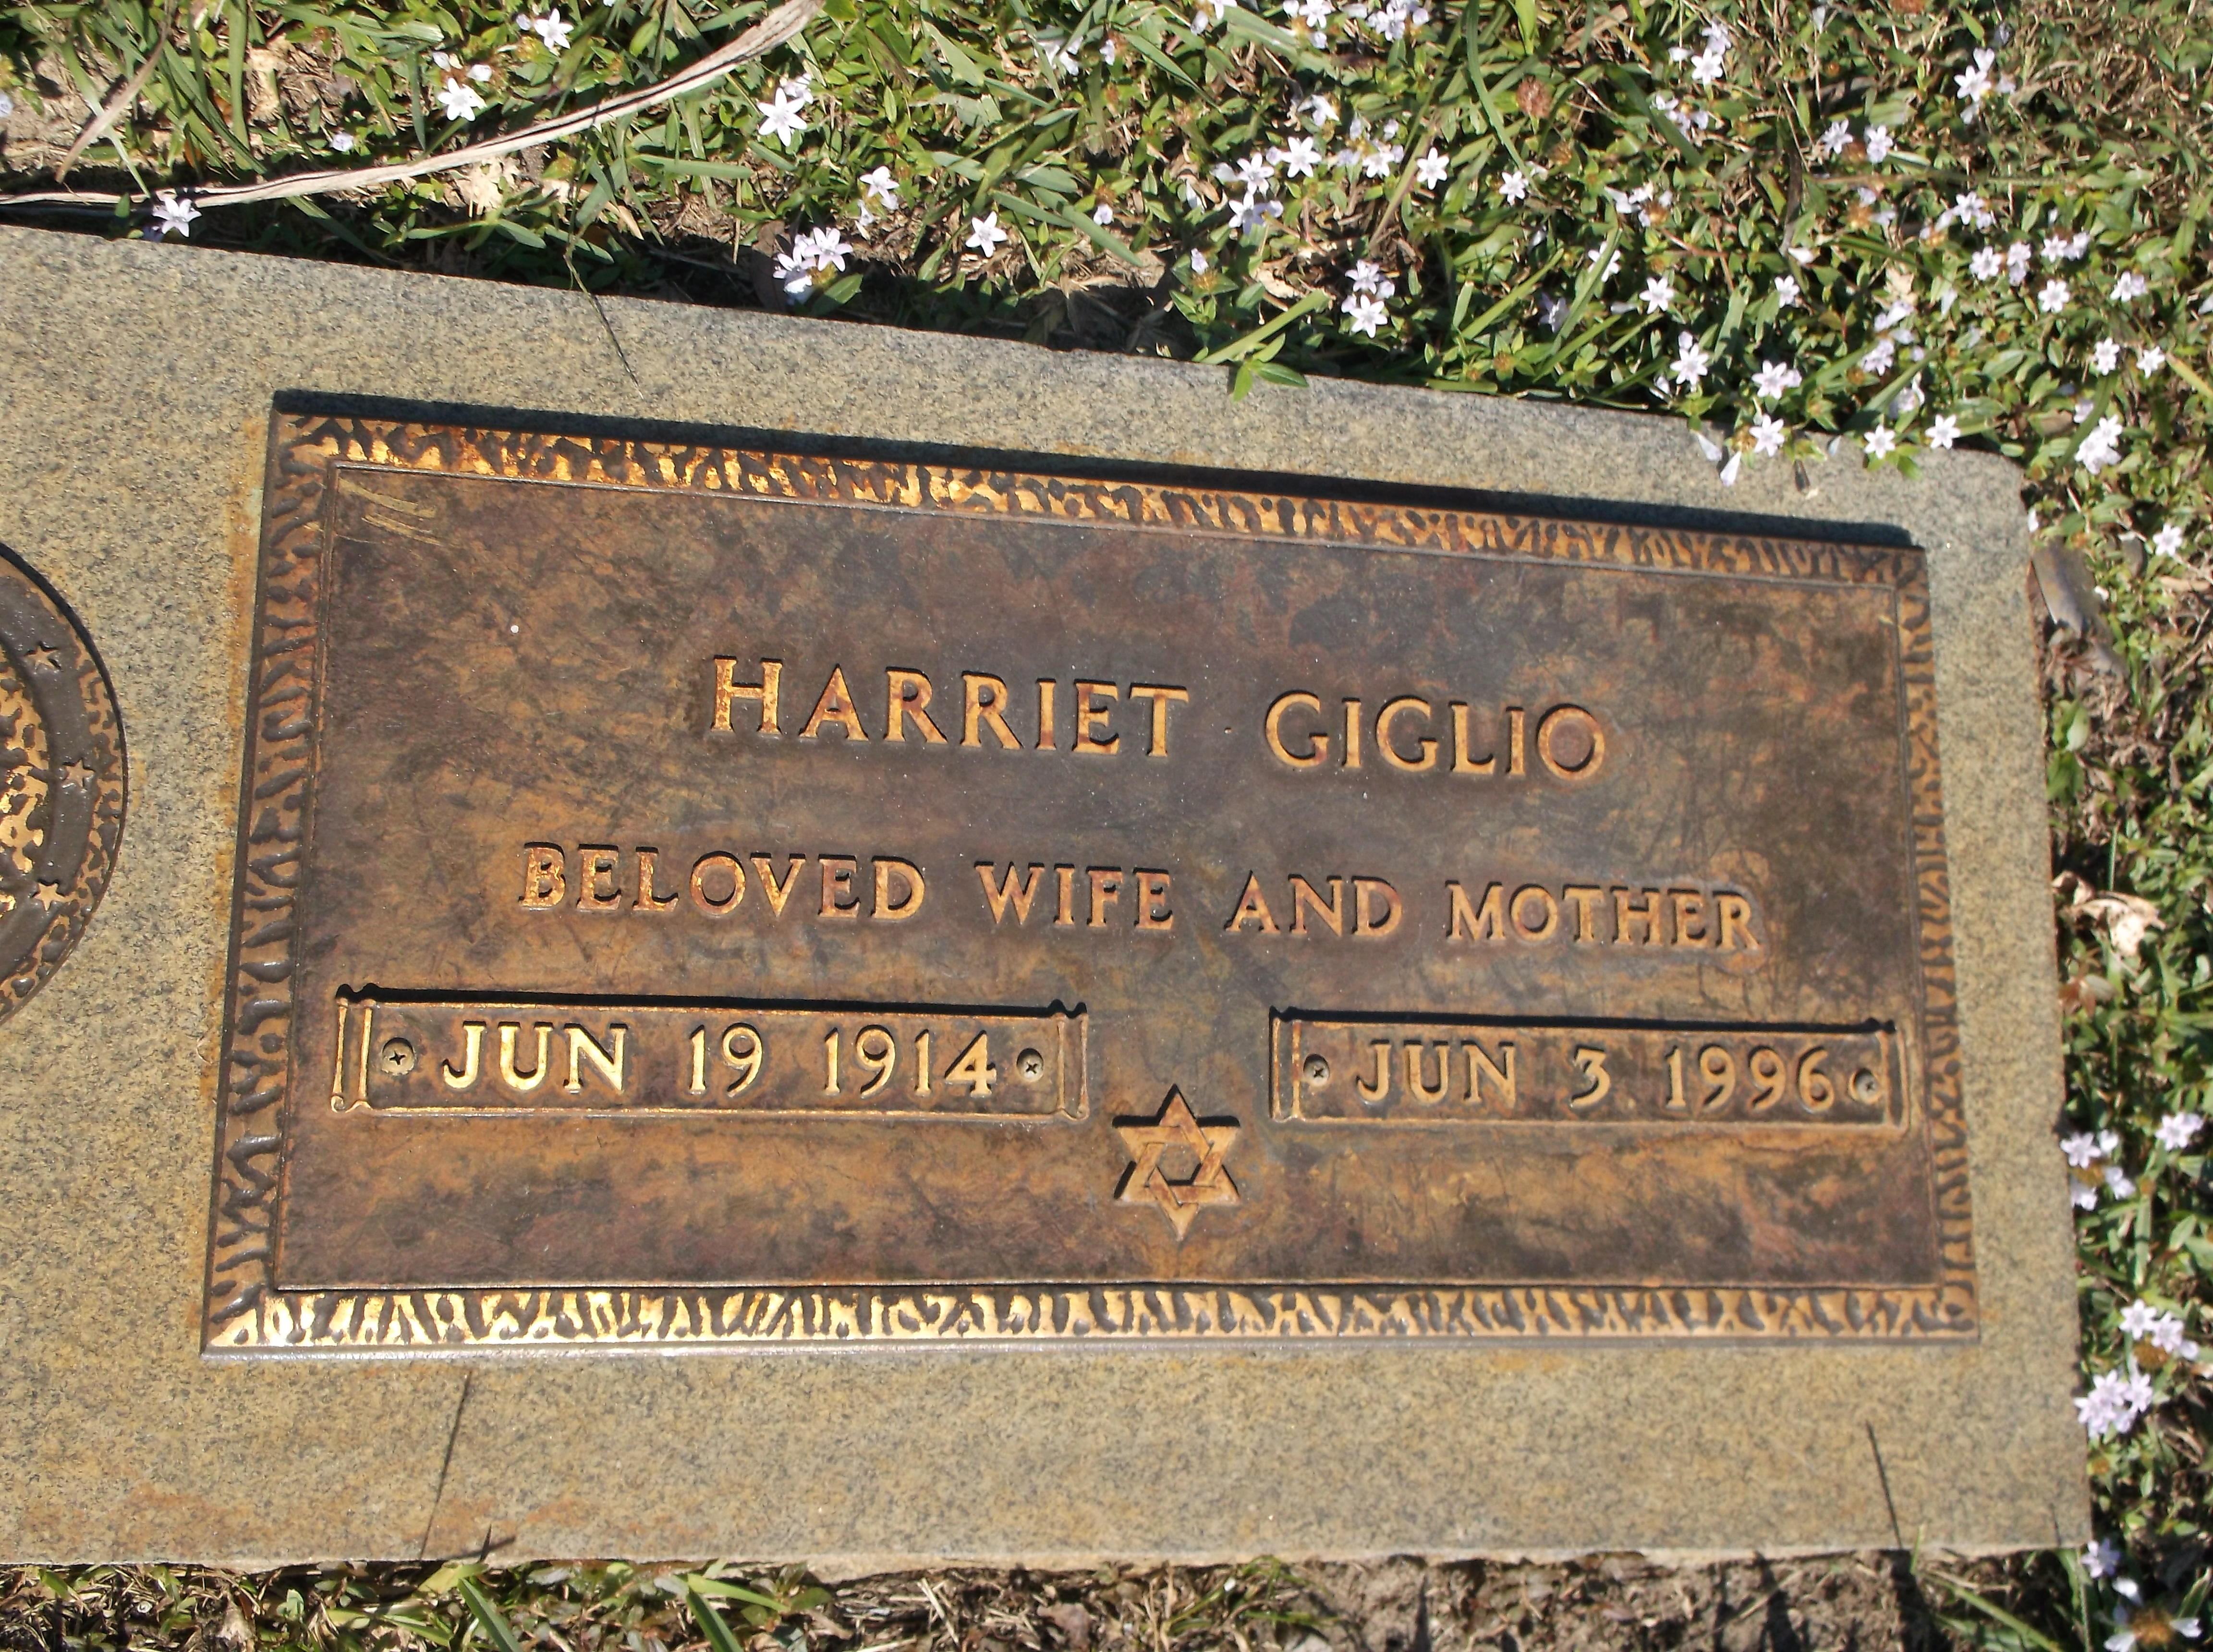 Harriet Giglio